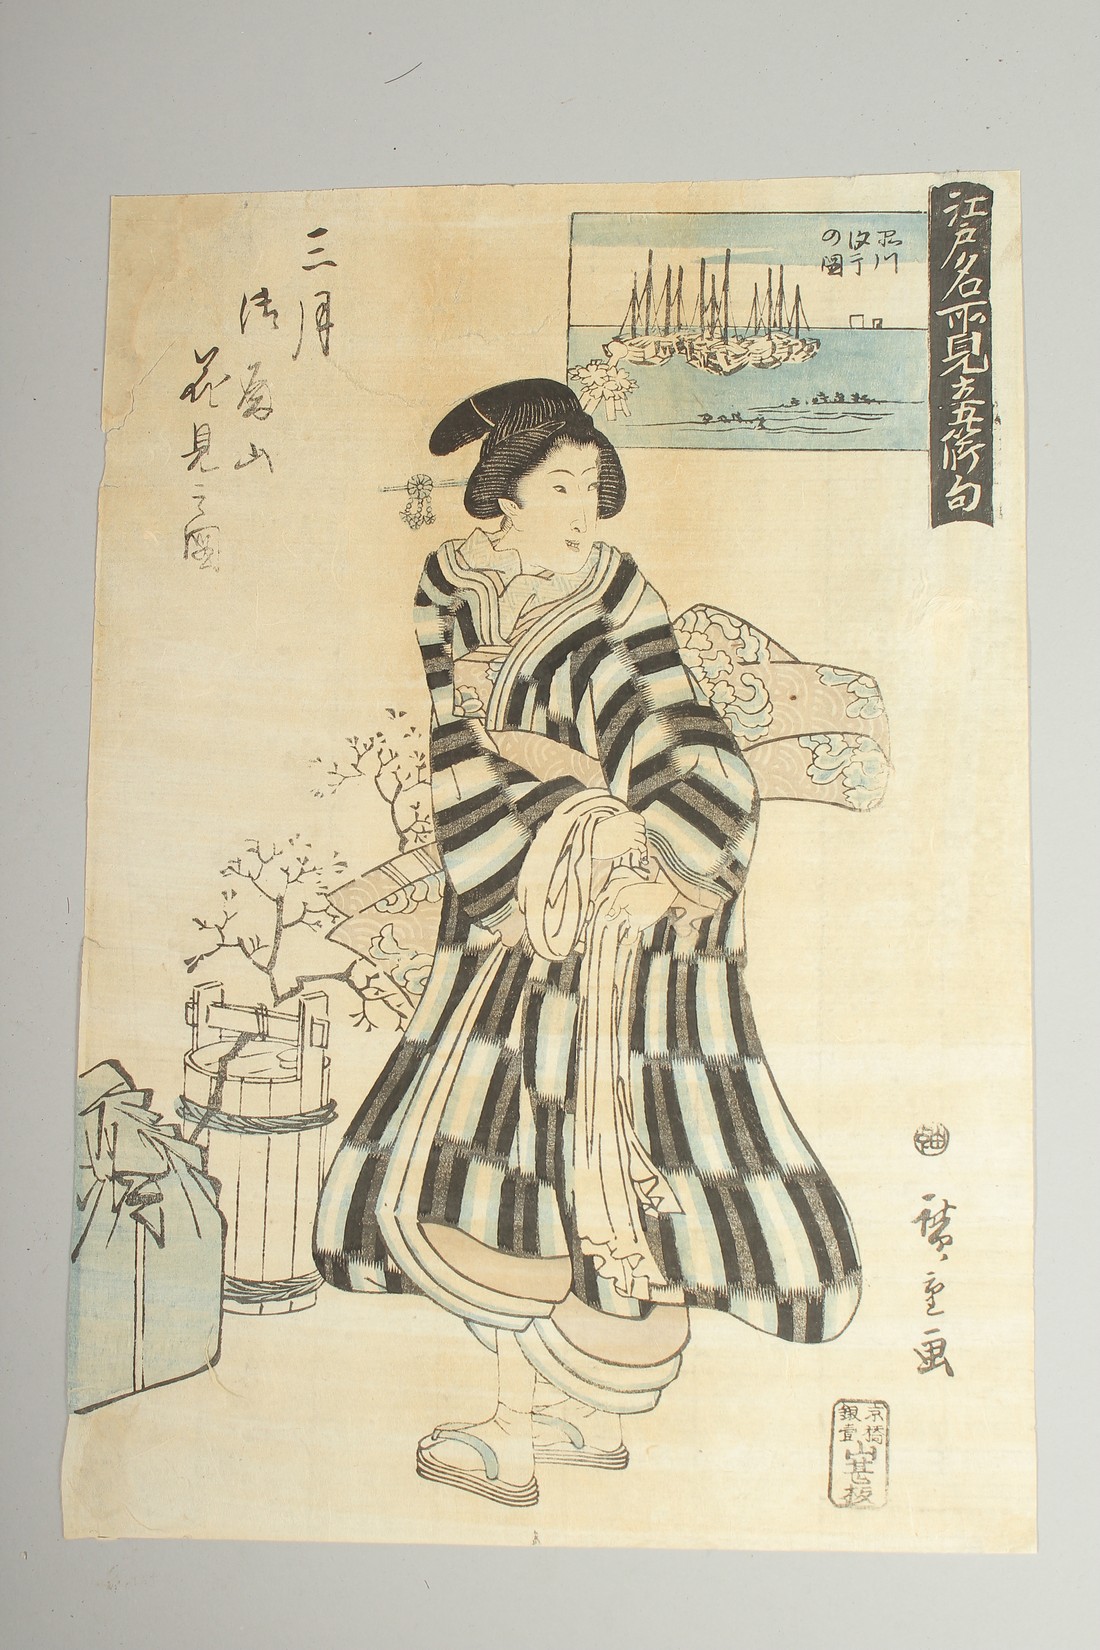 YOSHIFUJI UTAGAWA (1828-1887), SADAFUSA UTAGAWA (ACTIVE MID 19TH CENTURY), YOSHITORA UTAGAWA (1836- - Image 5 of 5